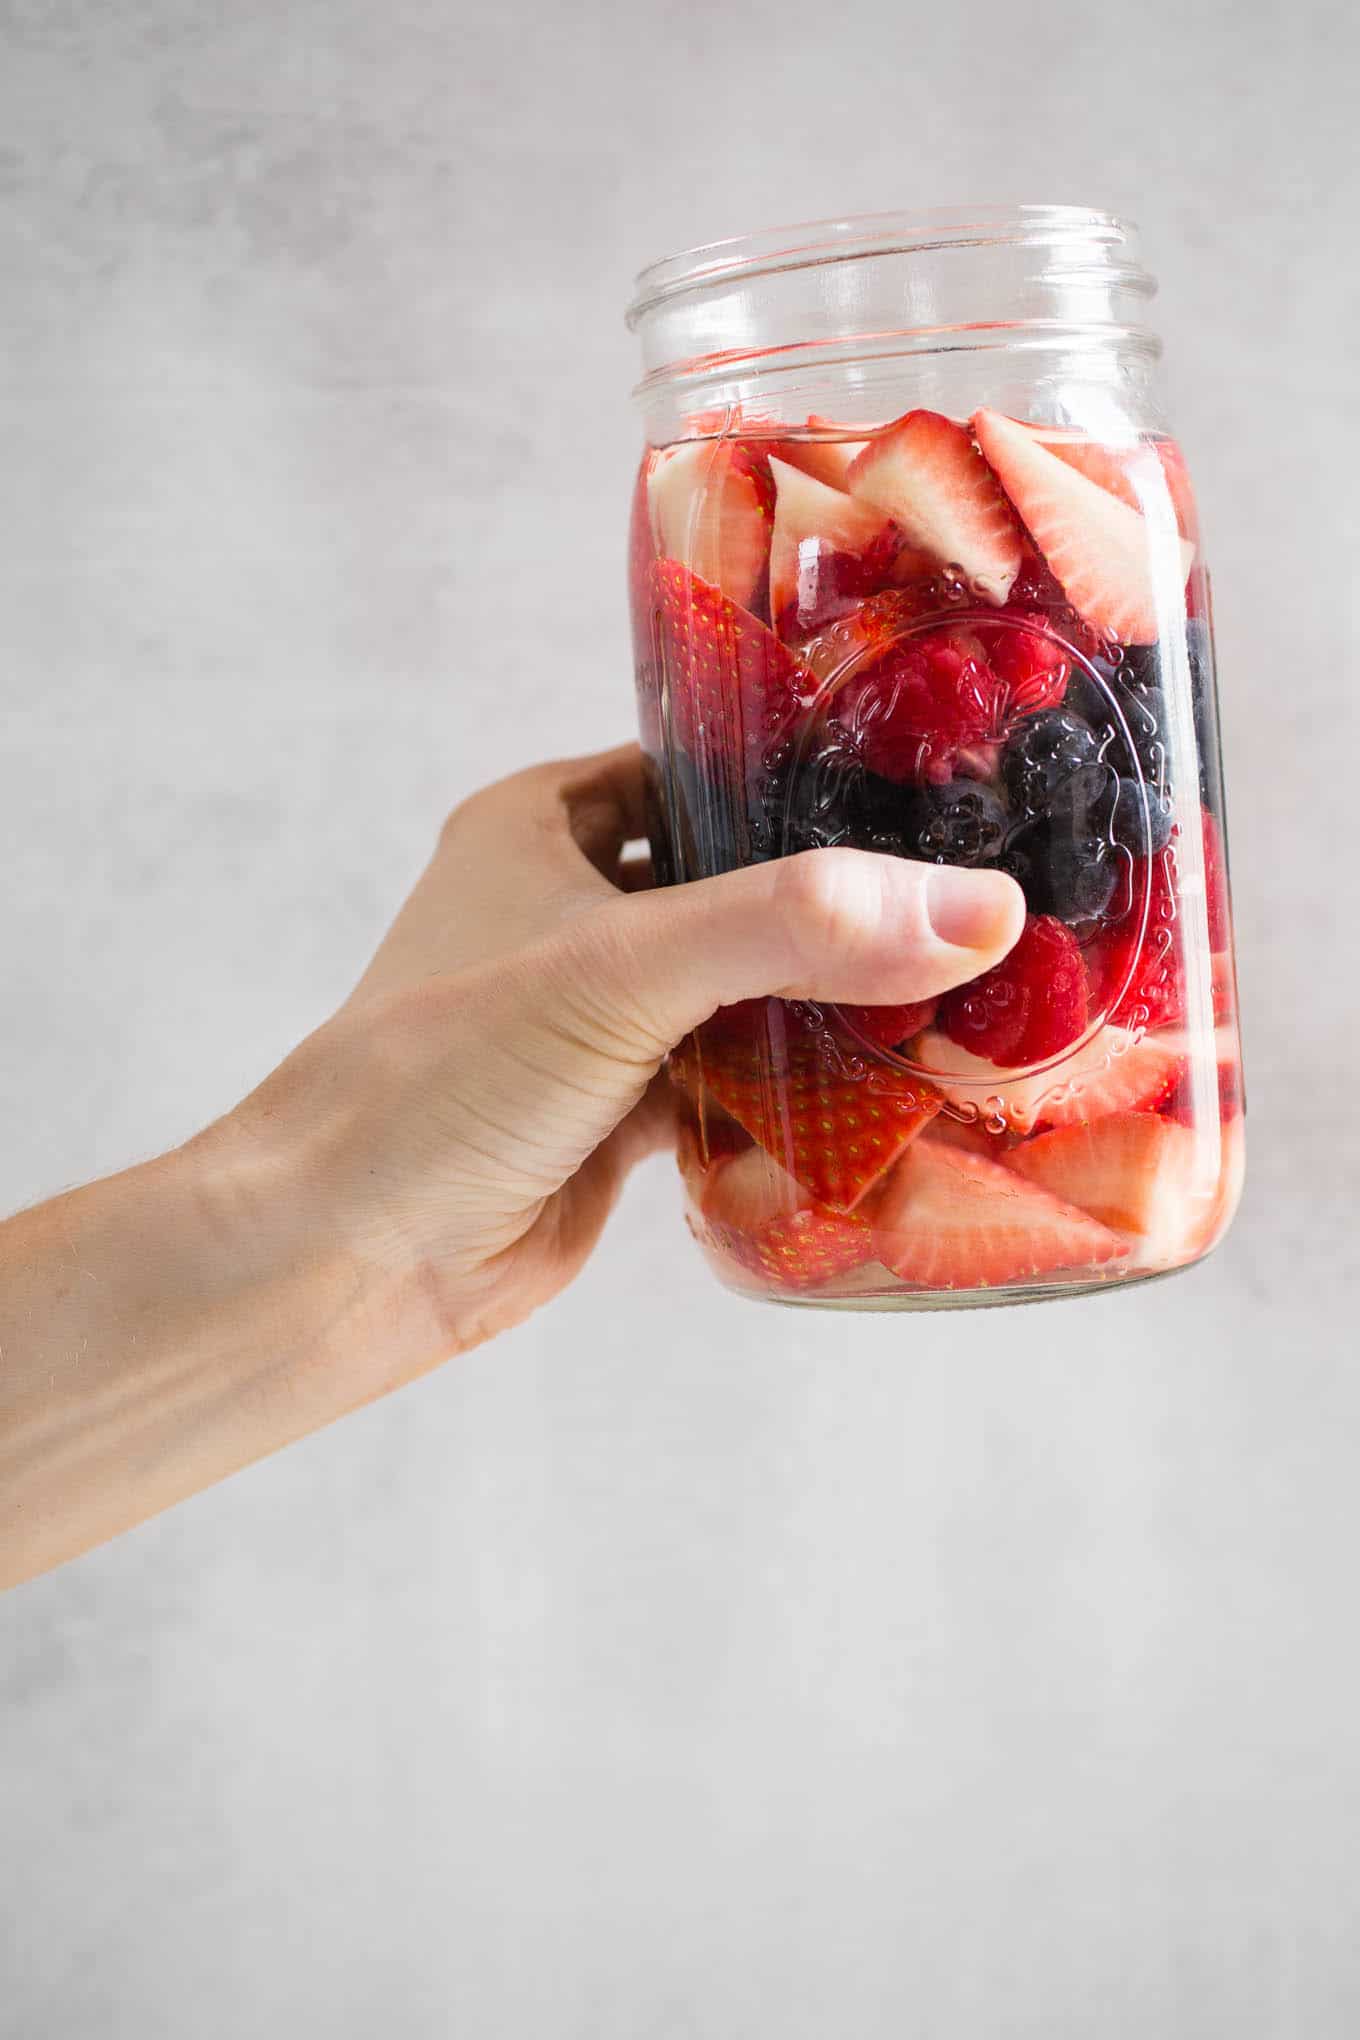 A jar of berries being held up.